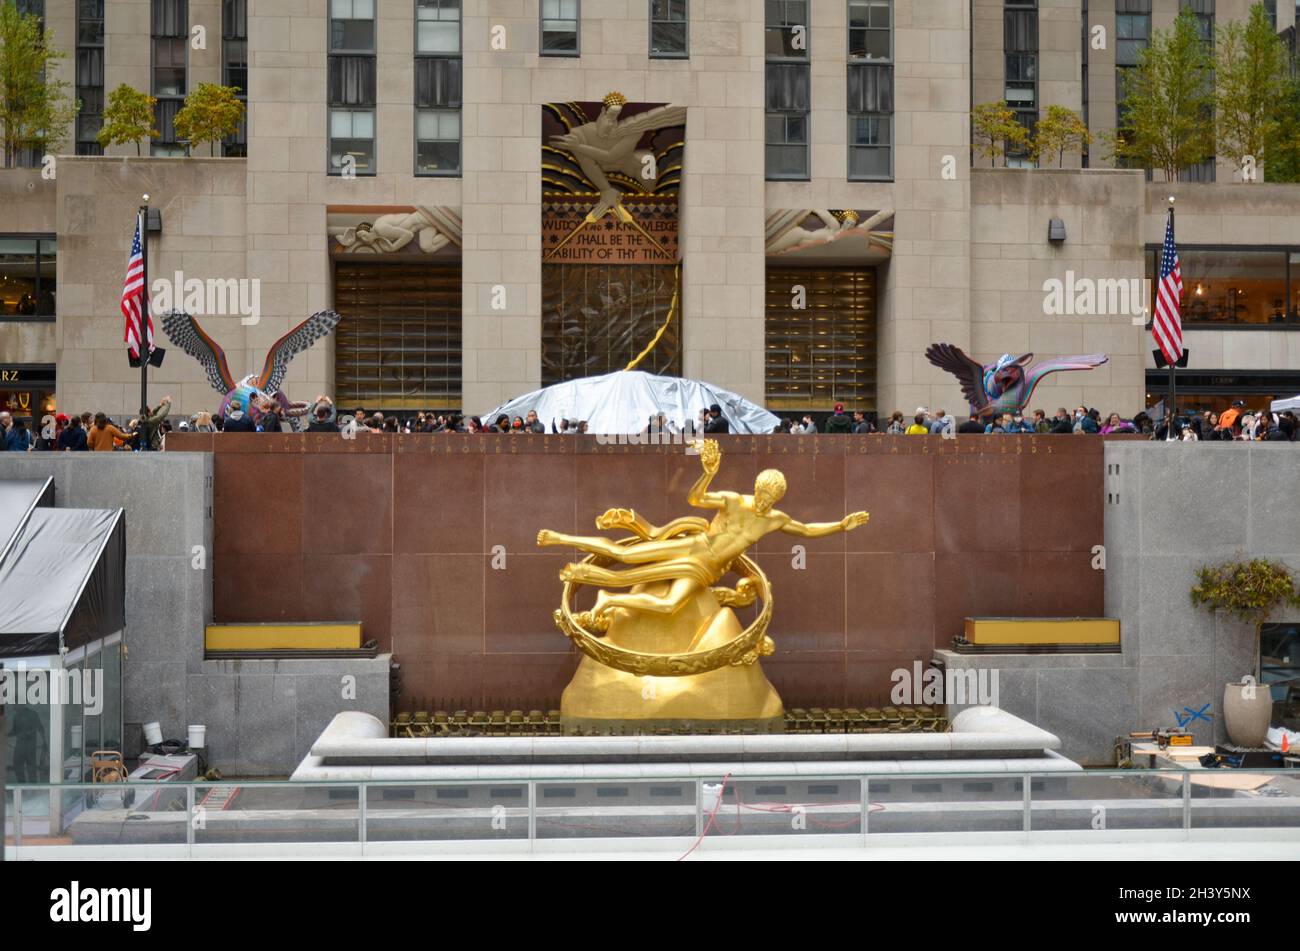 Les sculptures festives de Dias de los Muertos ont pris le contrôle du Rockefeller Center à New York dans le cadre de deux semaines de célébration du patrimoine mexicain. Banque D'Images